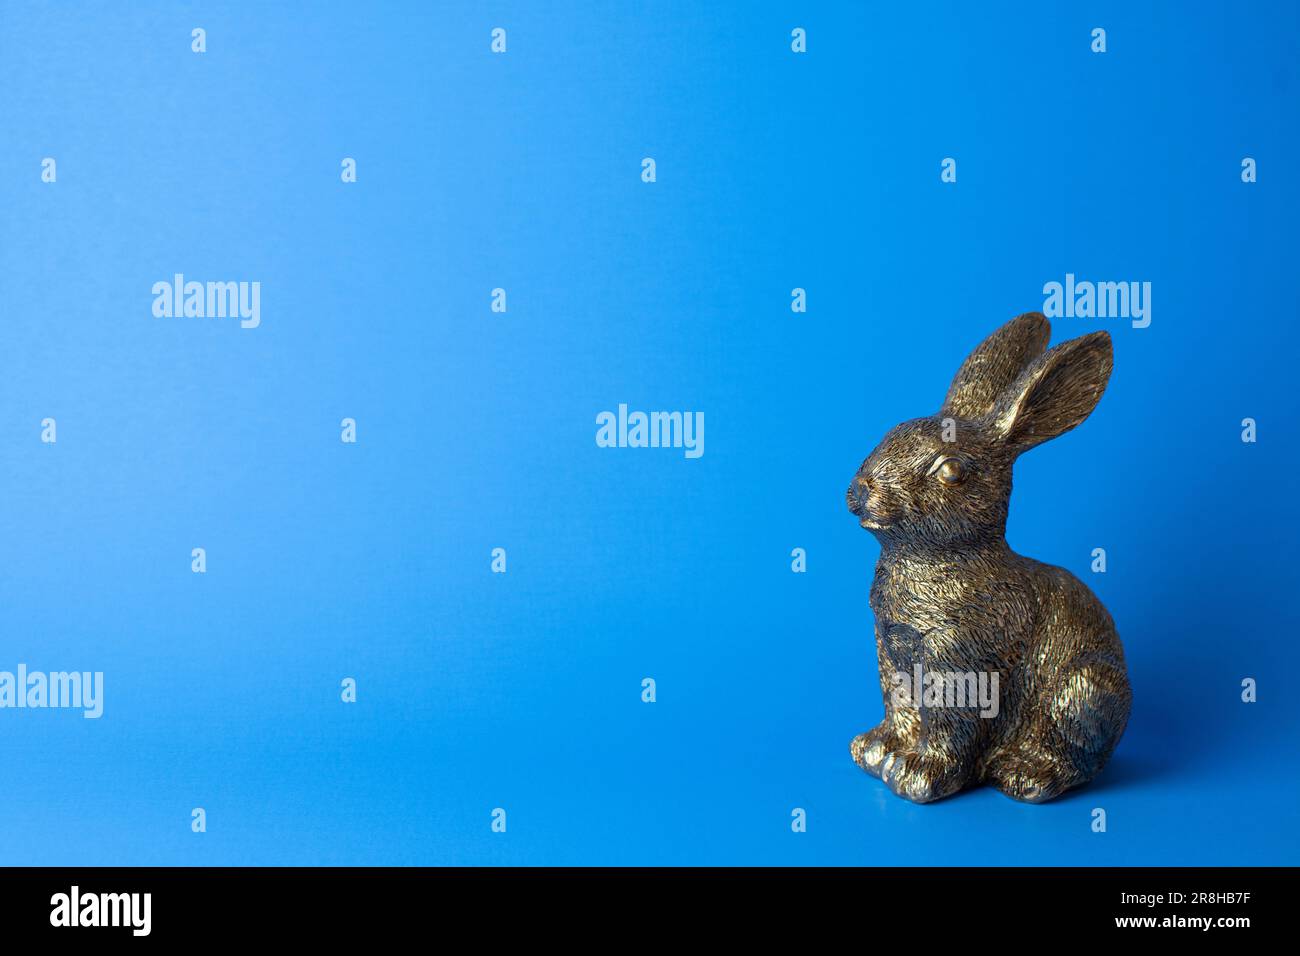 Figurine de lapin doré sur fond bleu. Espace libre Banque D'Images